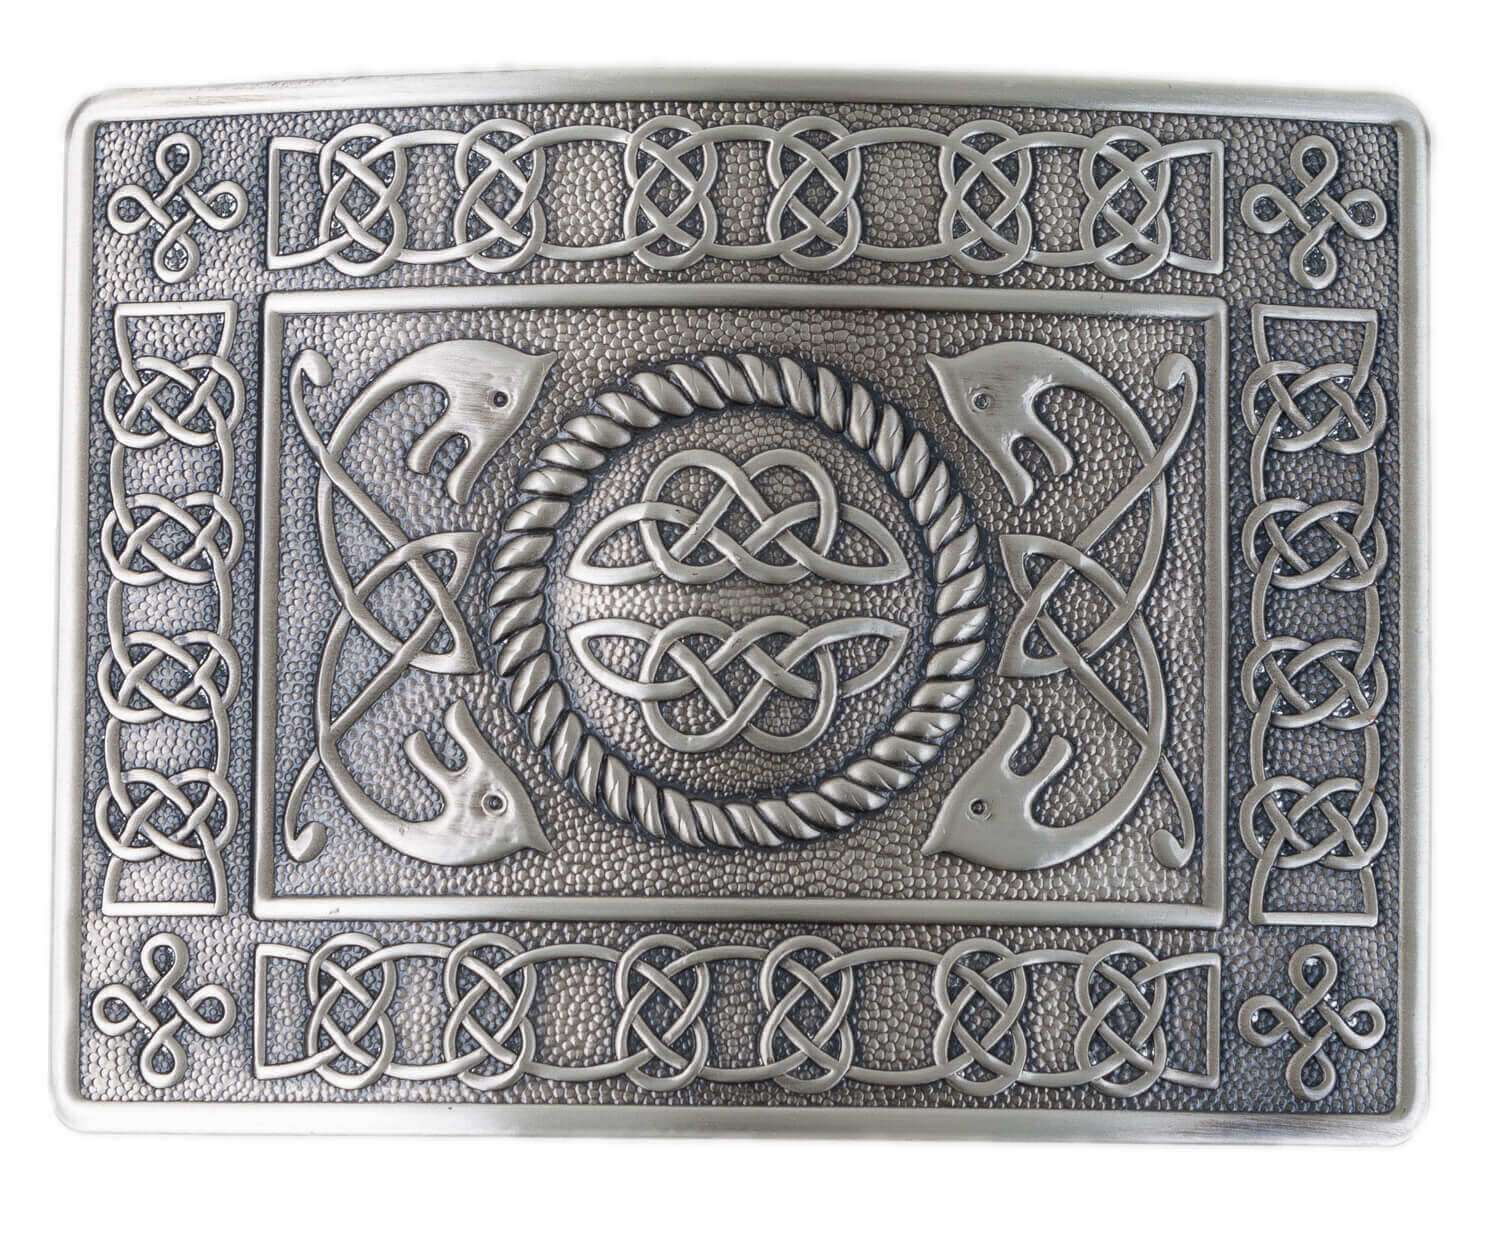 Highland Serpent Antiqued Kilt Belt Buckle - Made in Scotland Solid Brass